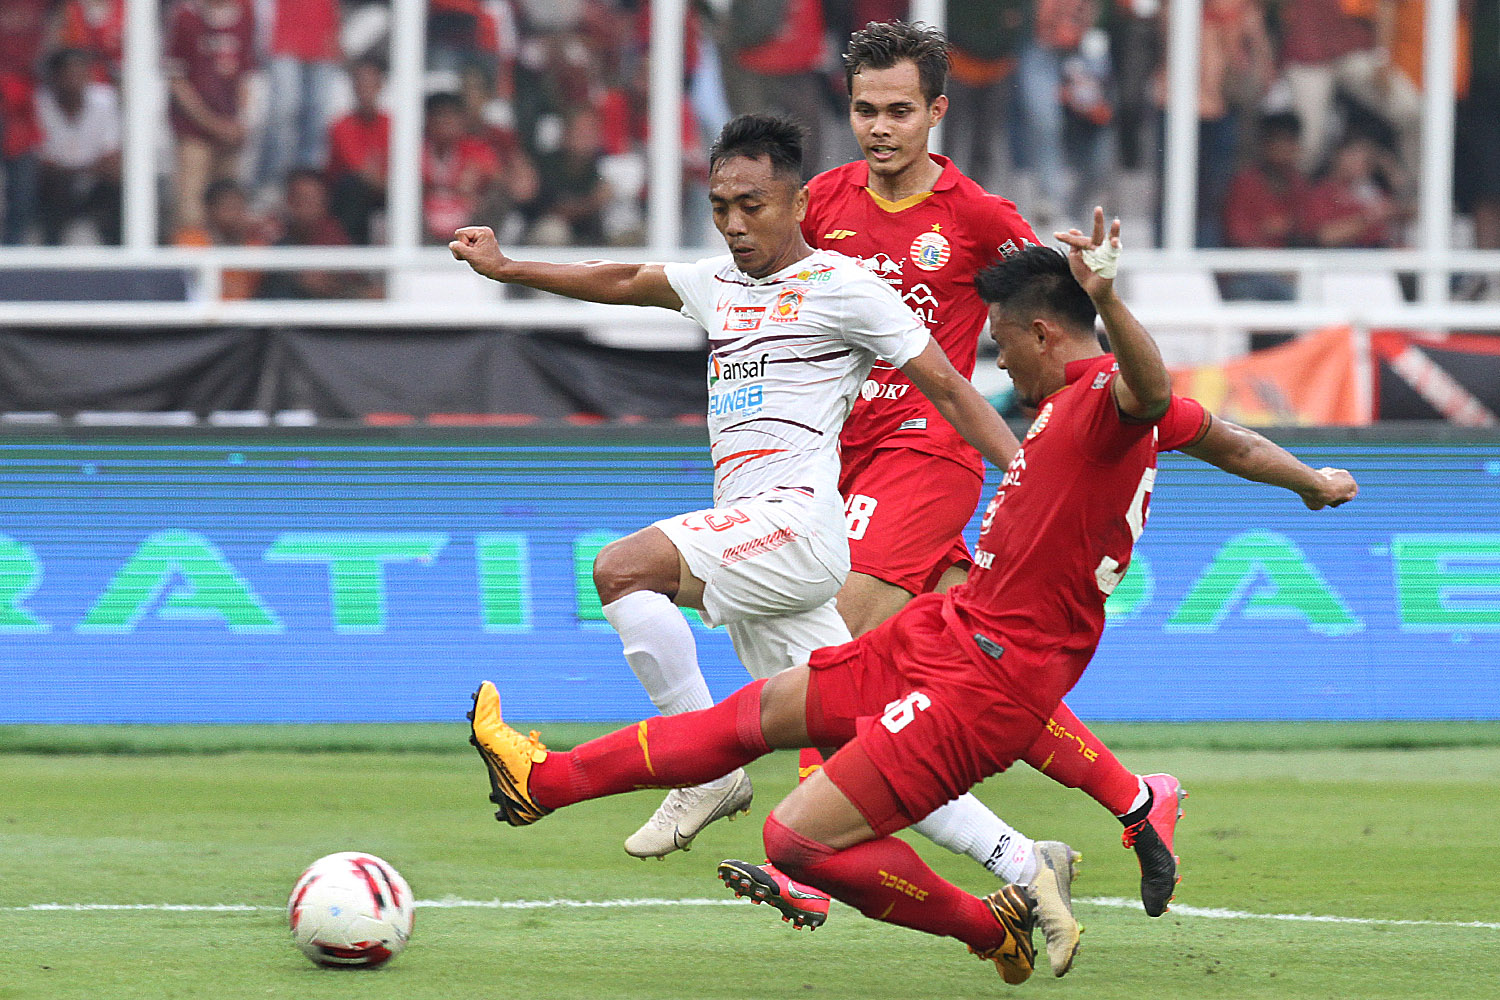 Menolak Tua, Bek Persija Jakarta Siap Tampil Total di Liga 1 2020